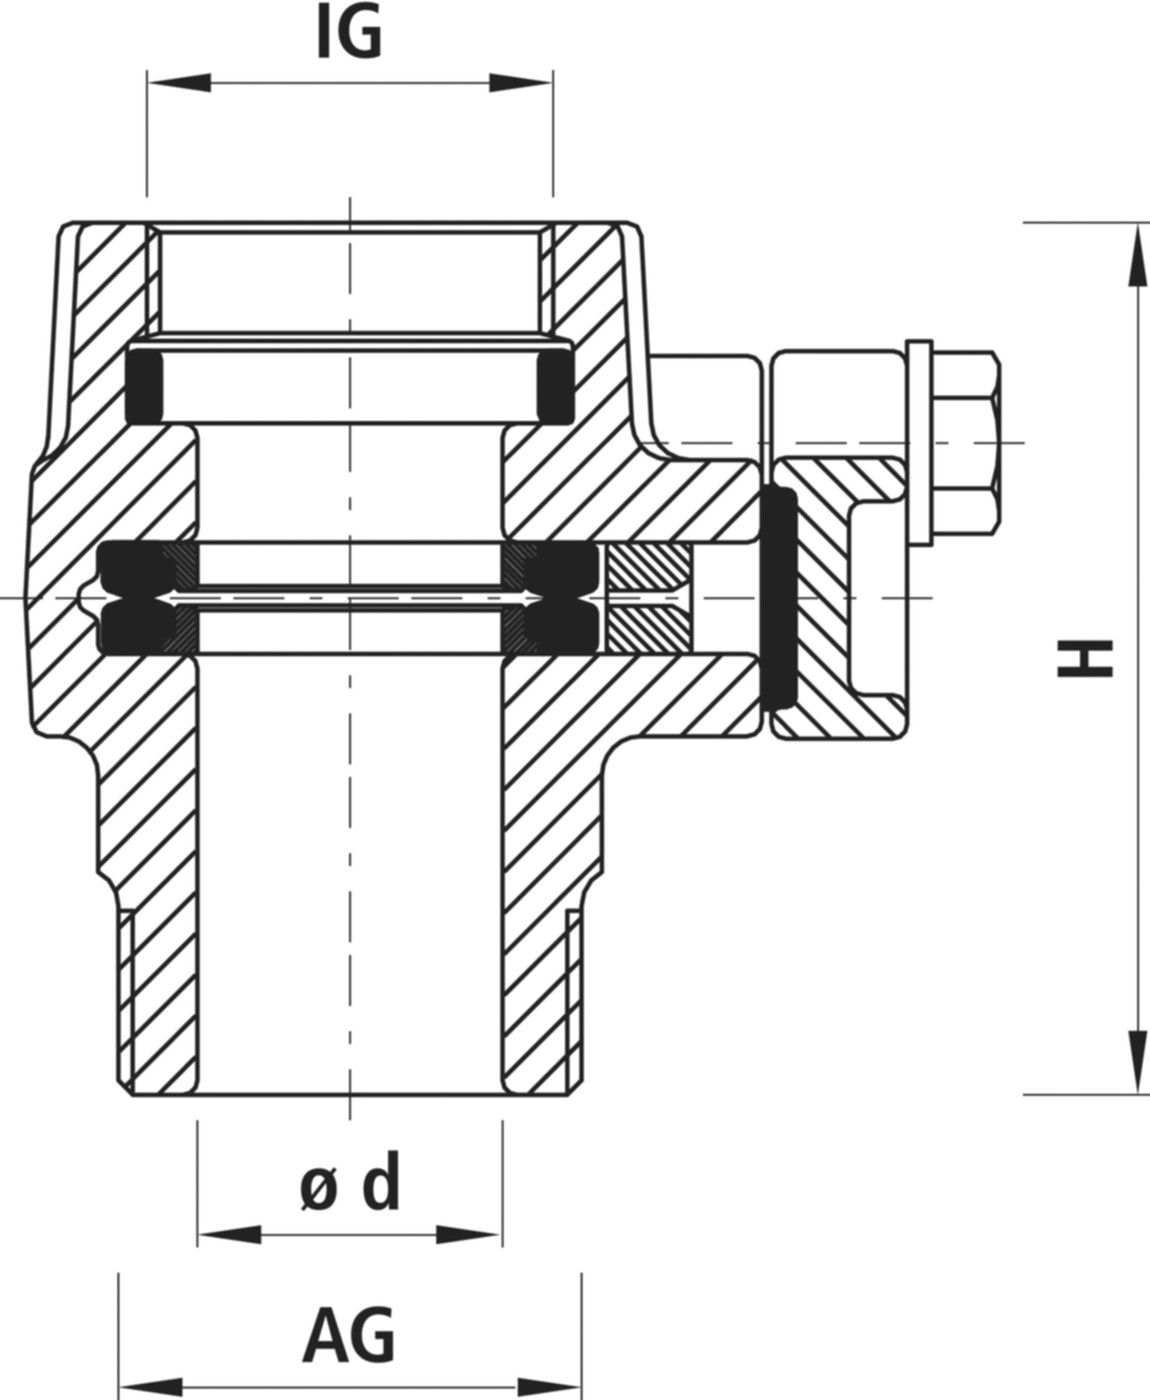 Einschraub-Anbohrsperre IG/AG 3720 1" - 1 1/4" - Hawle Hausanschluss- und Anbohrarmaturen